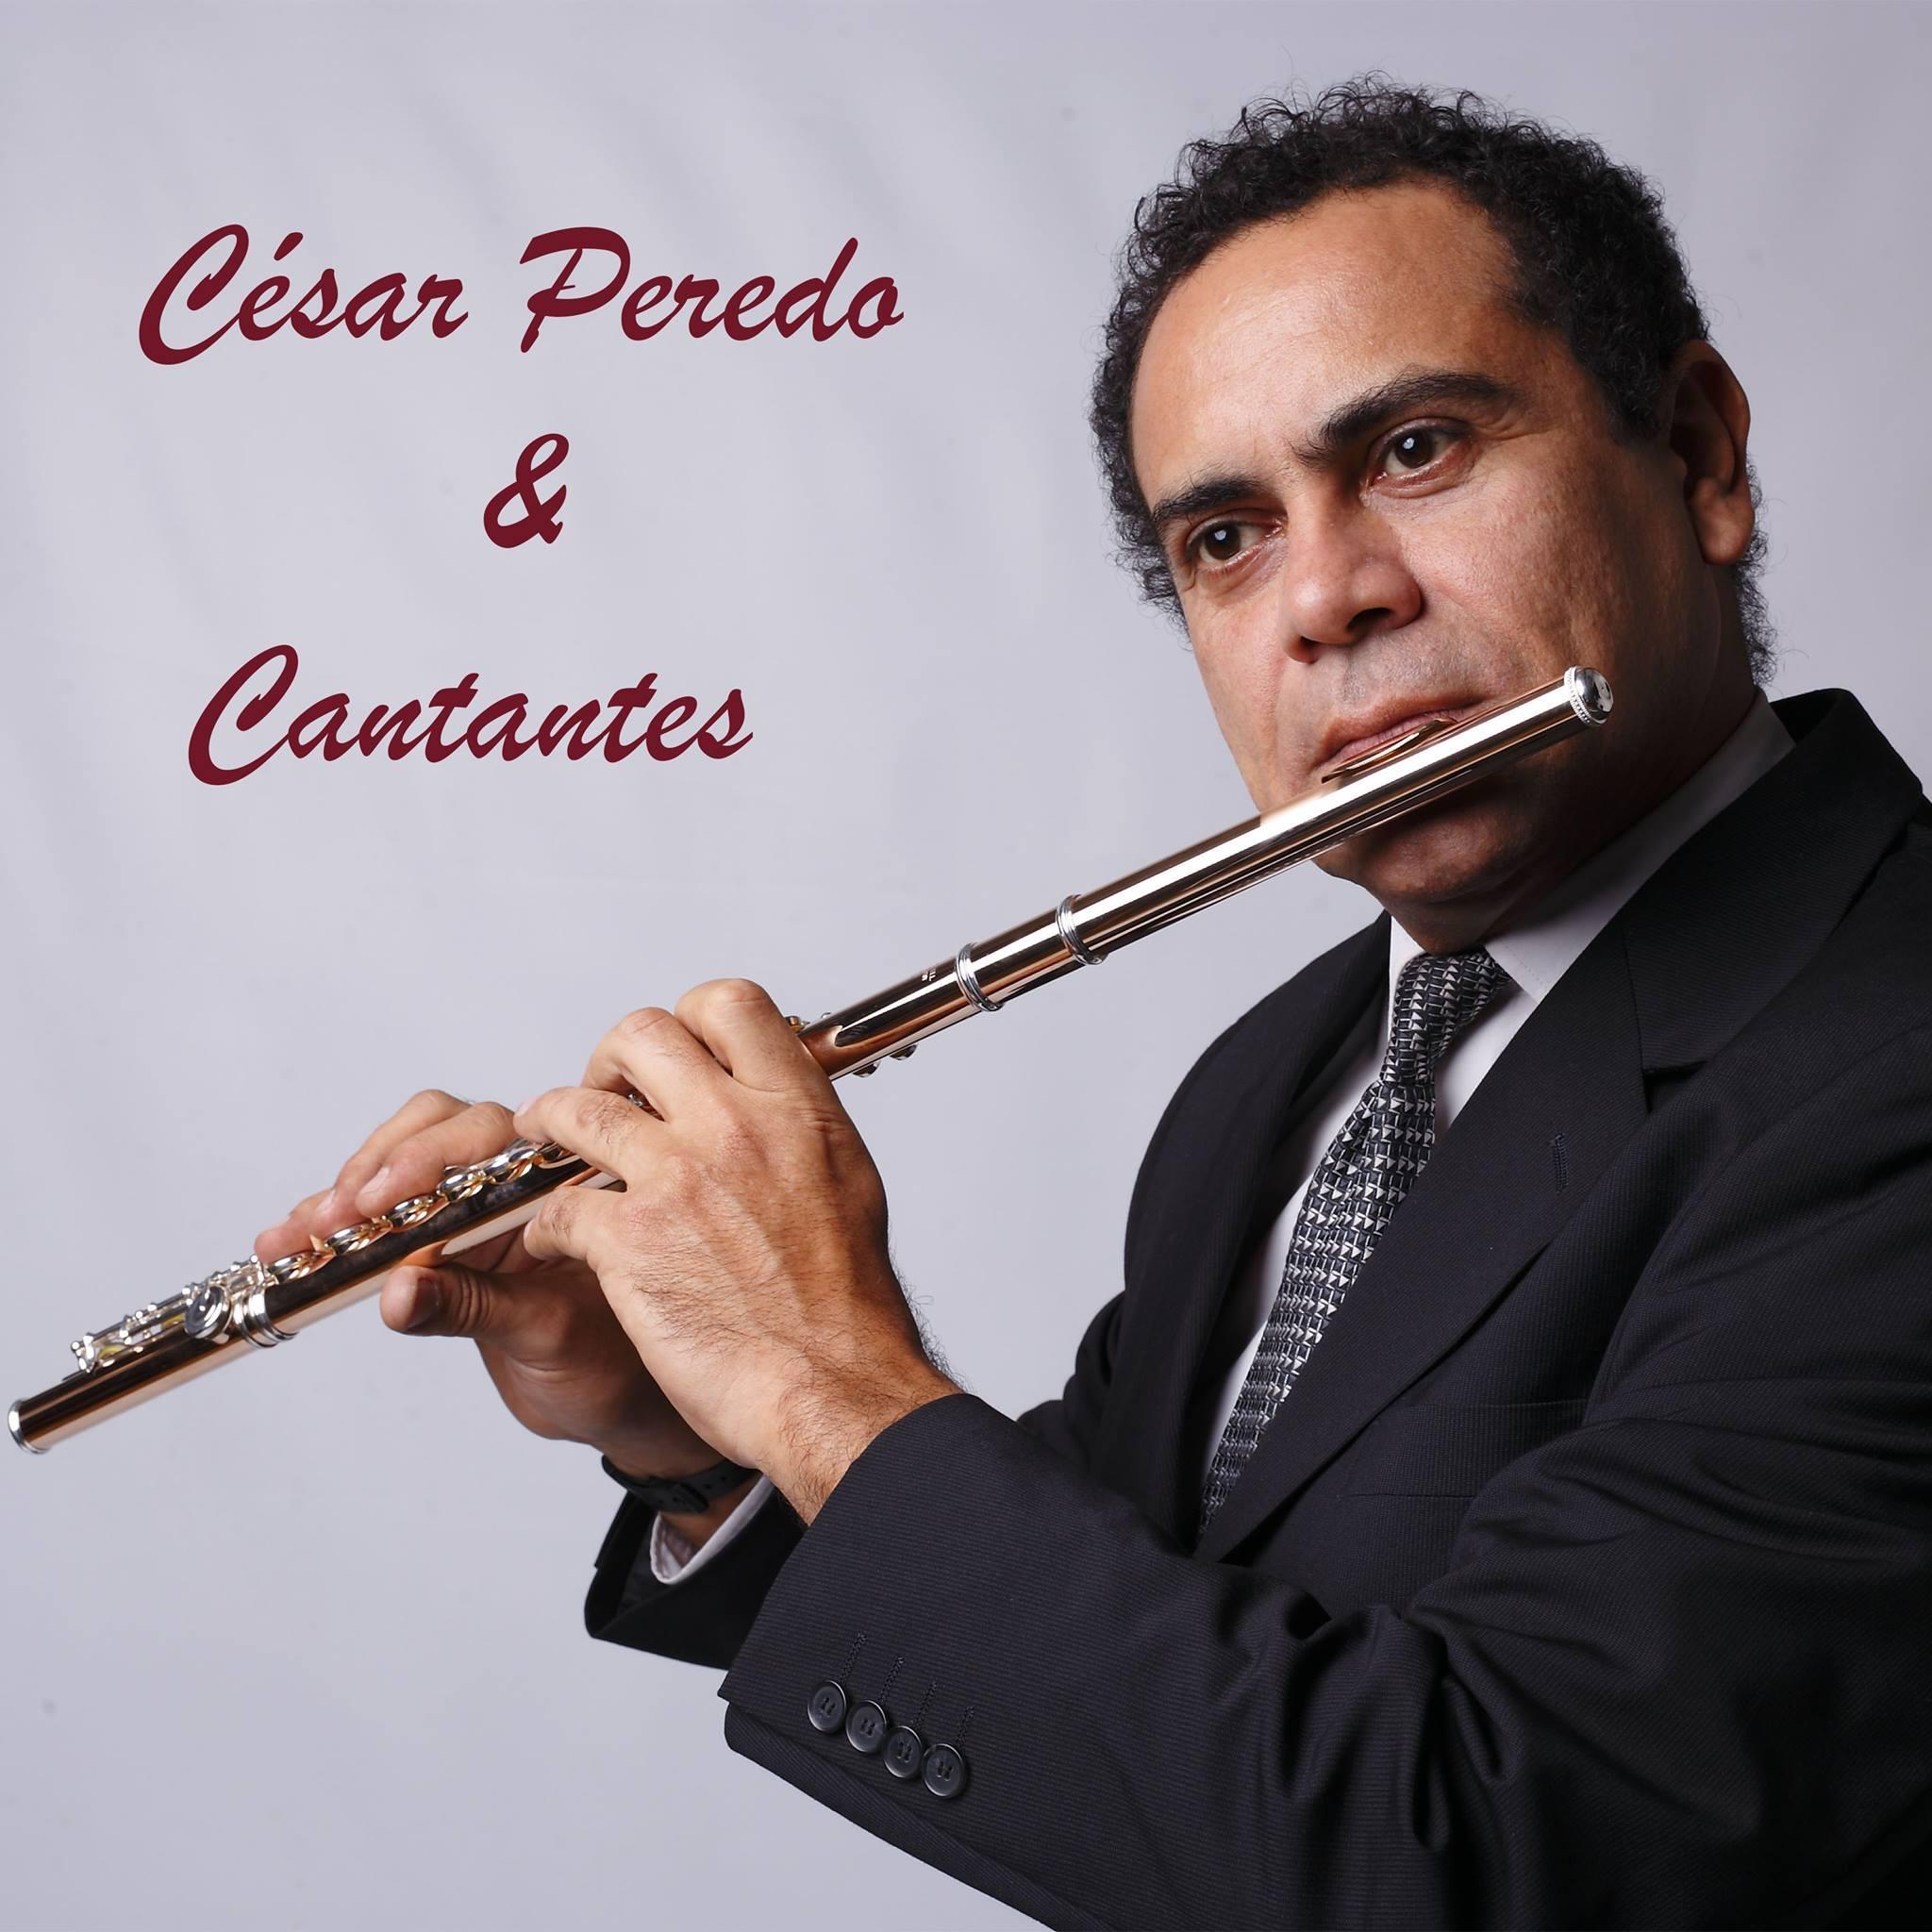 César Peredo